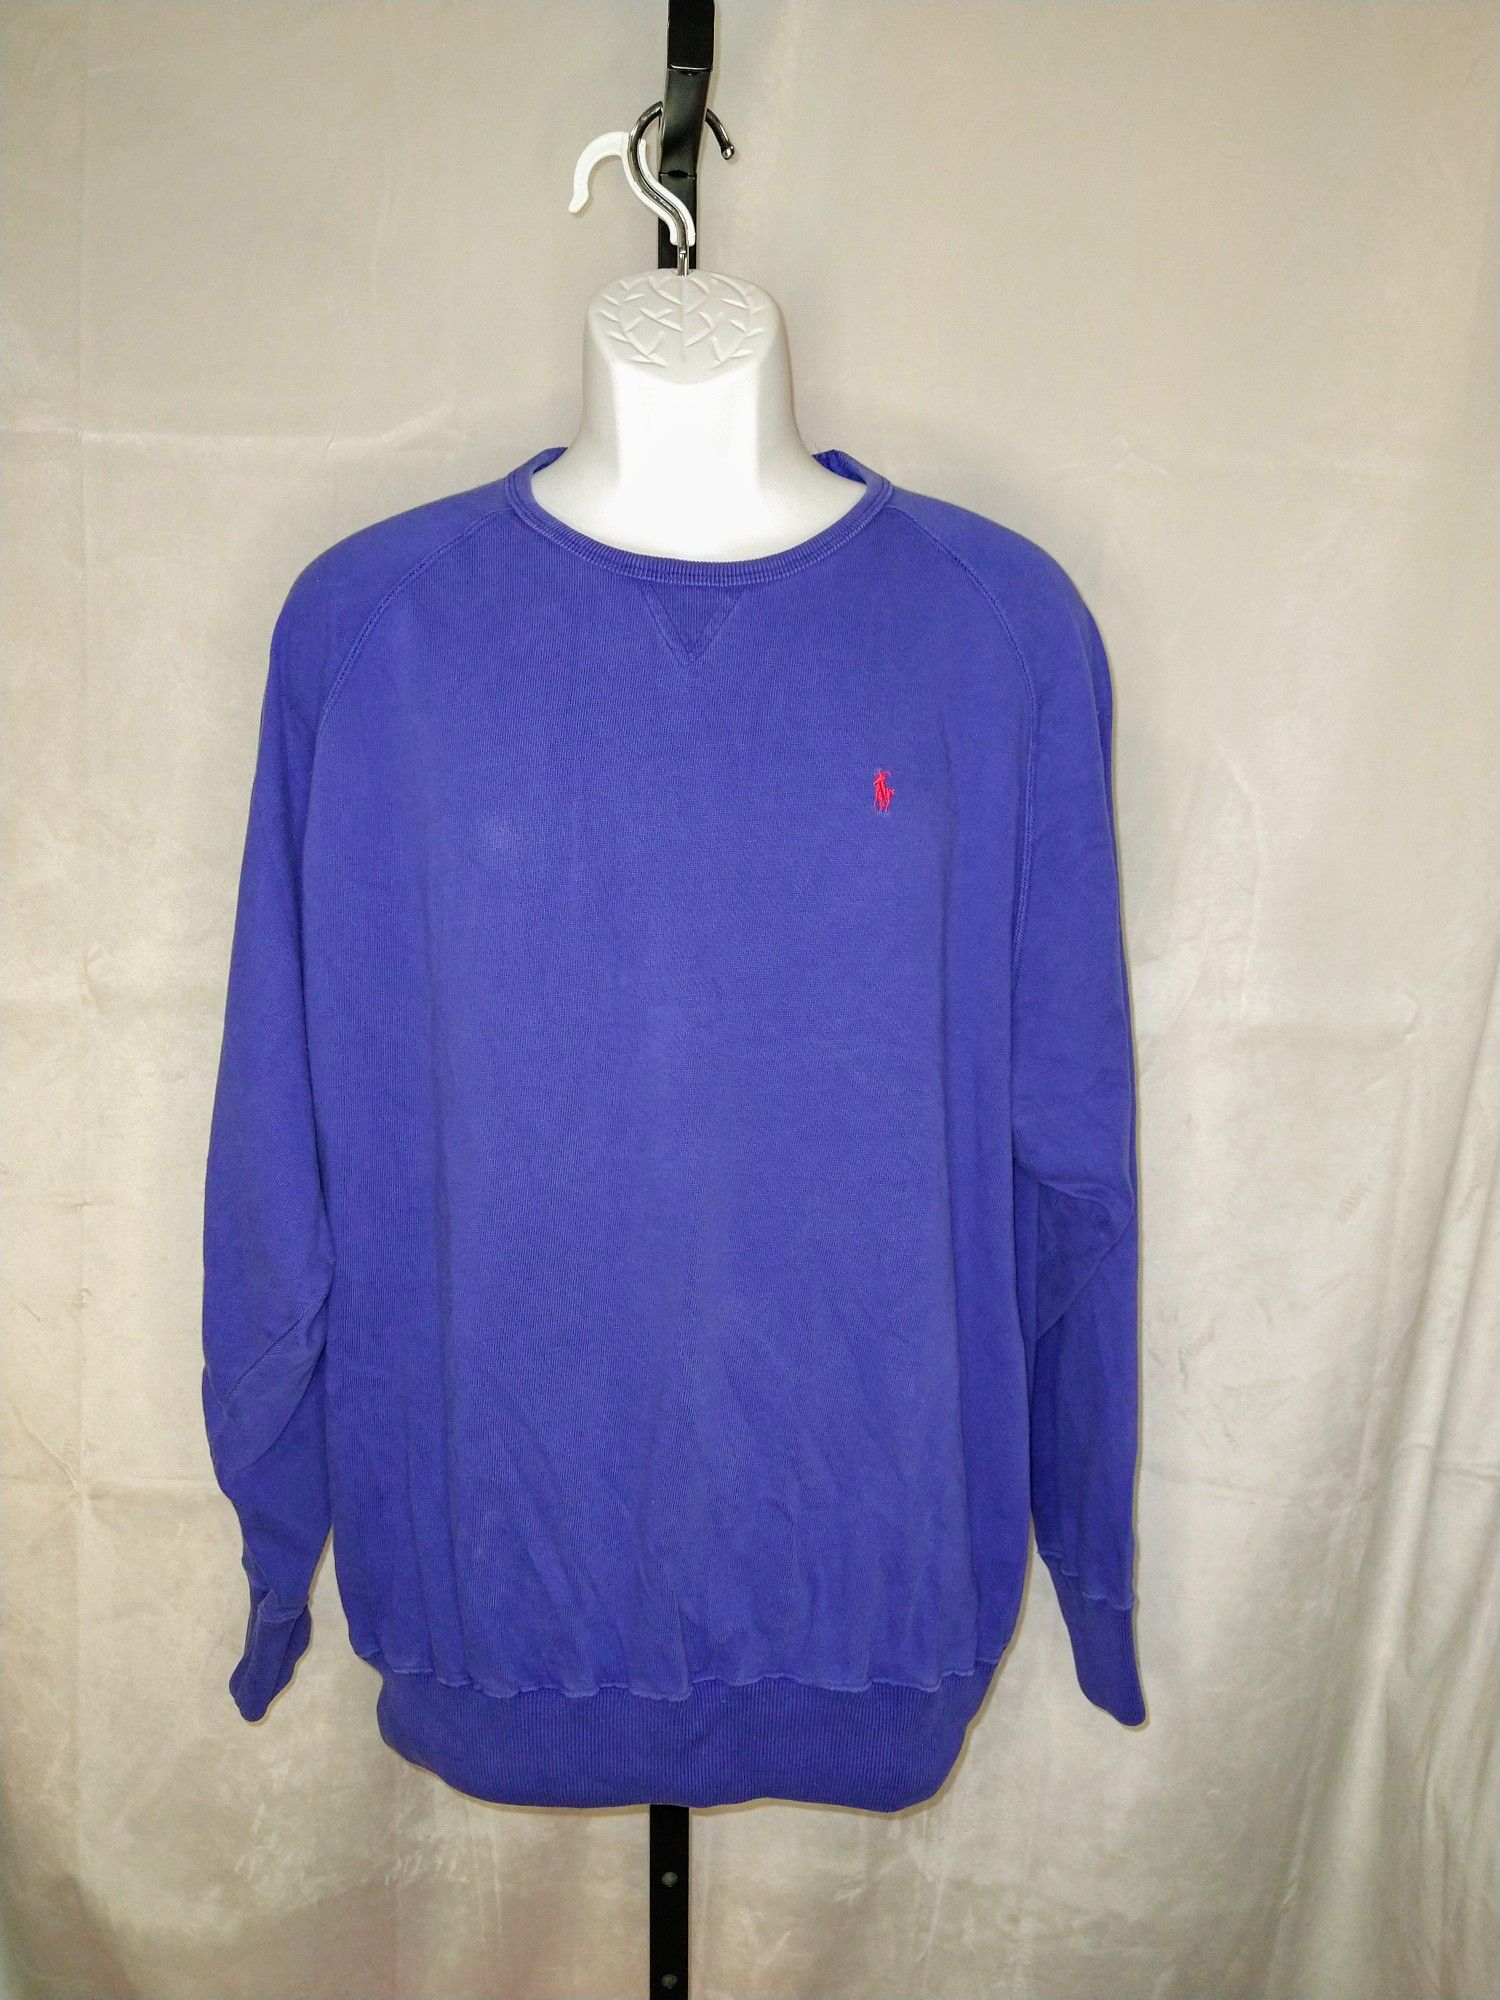 Men's Polo Sweatshirt Size XL